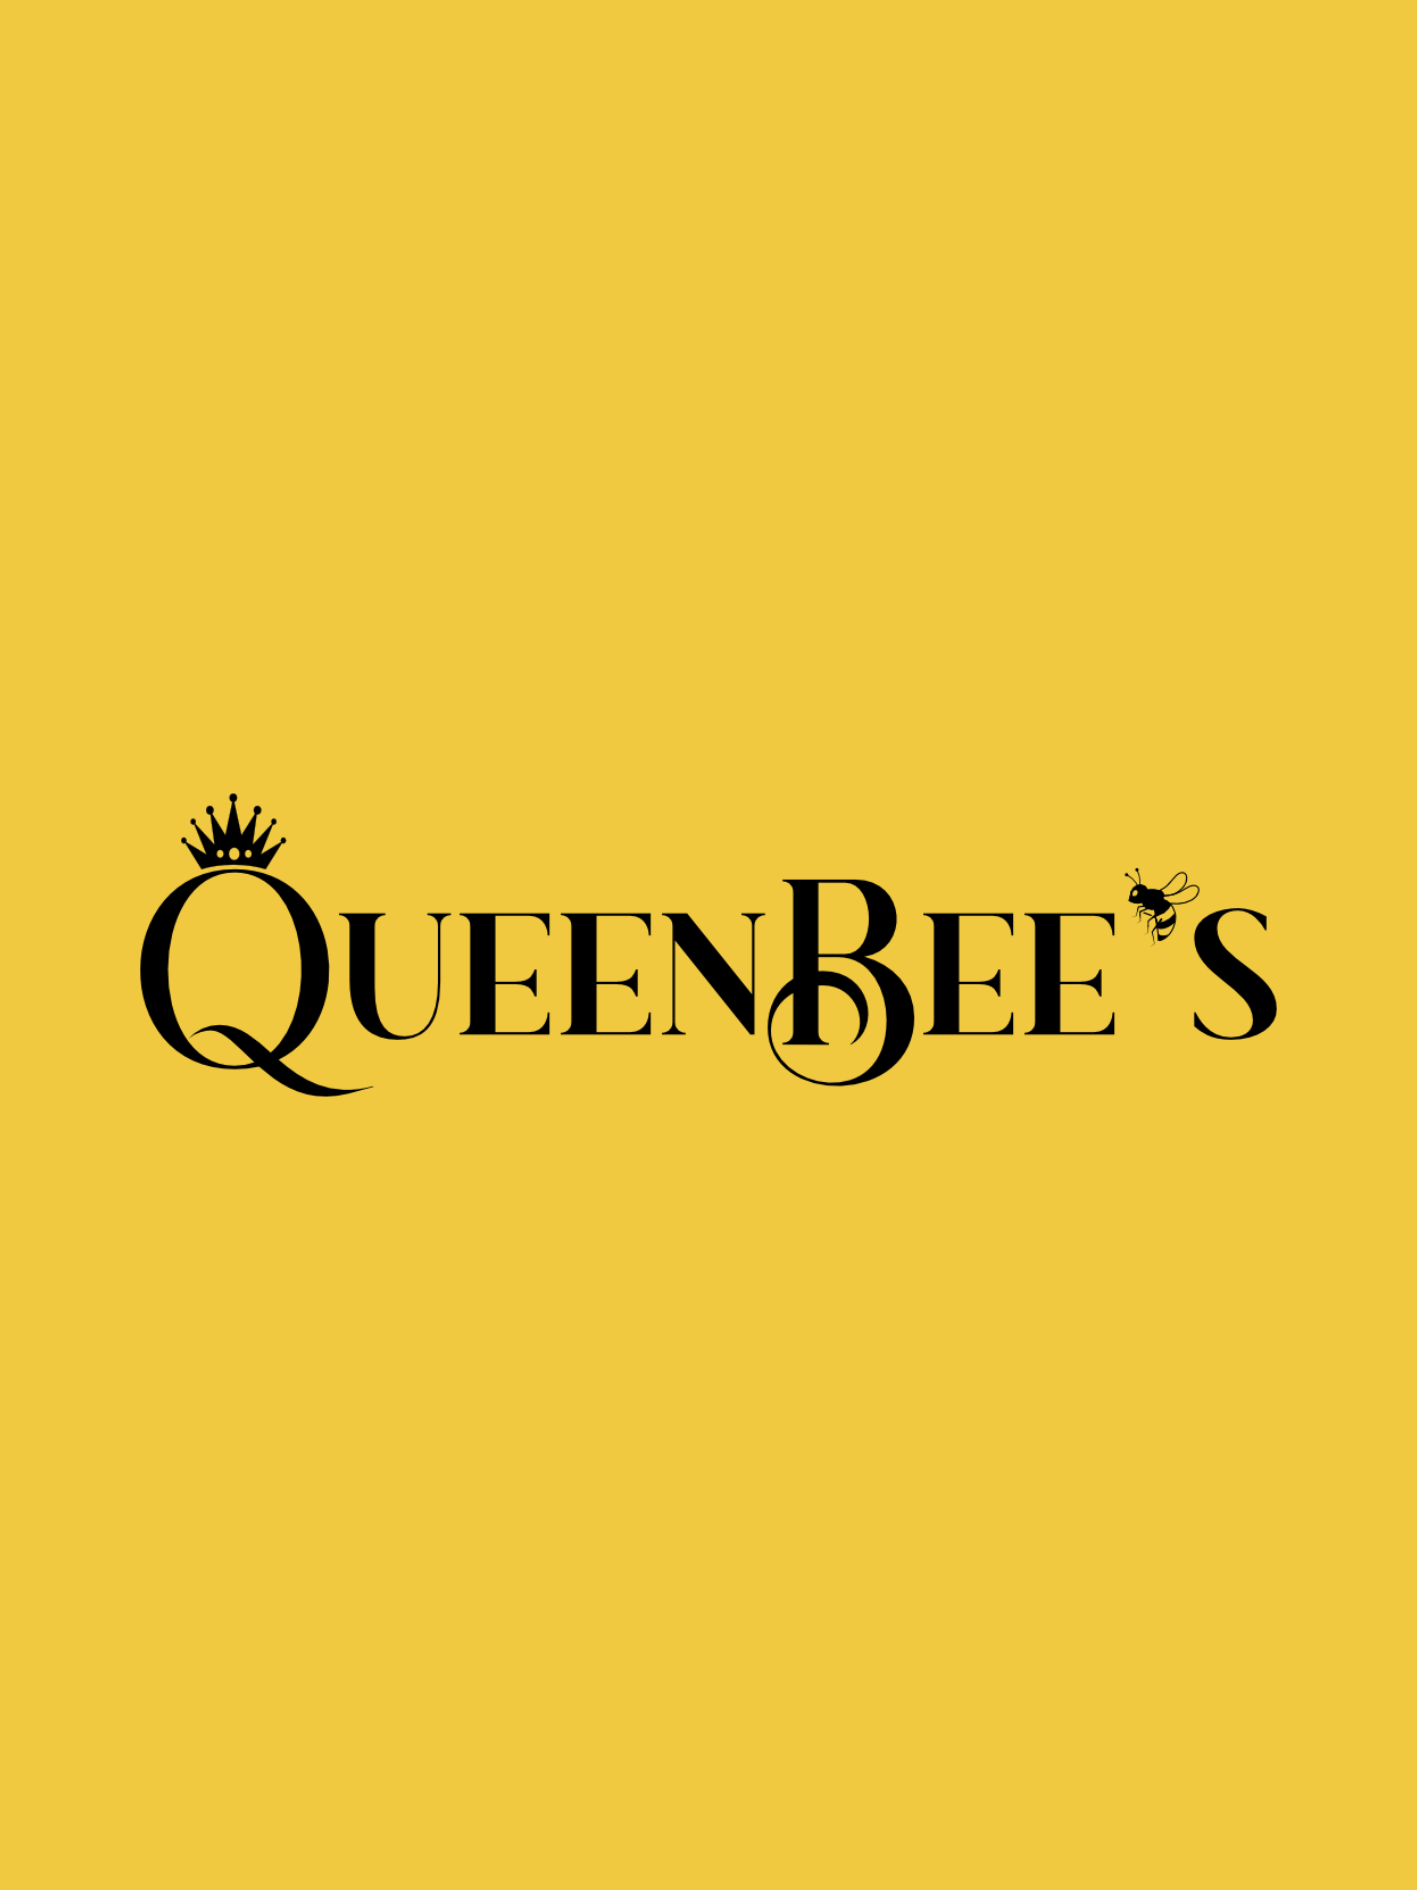 Queen Bee's